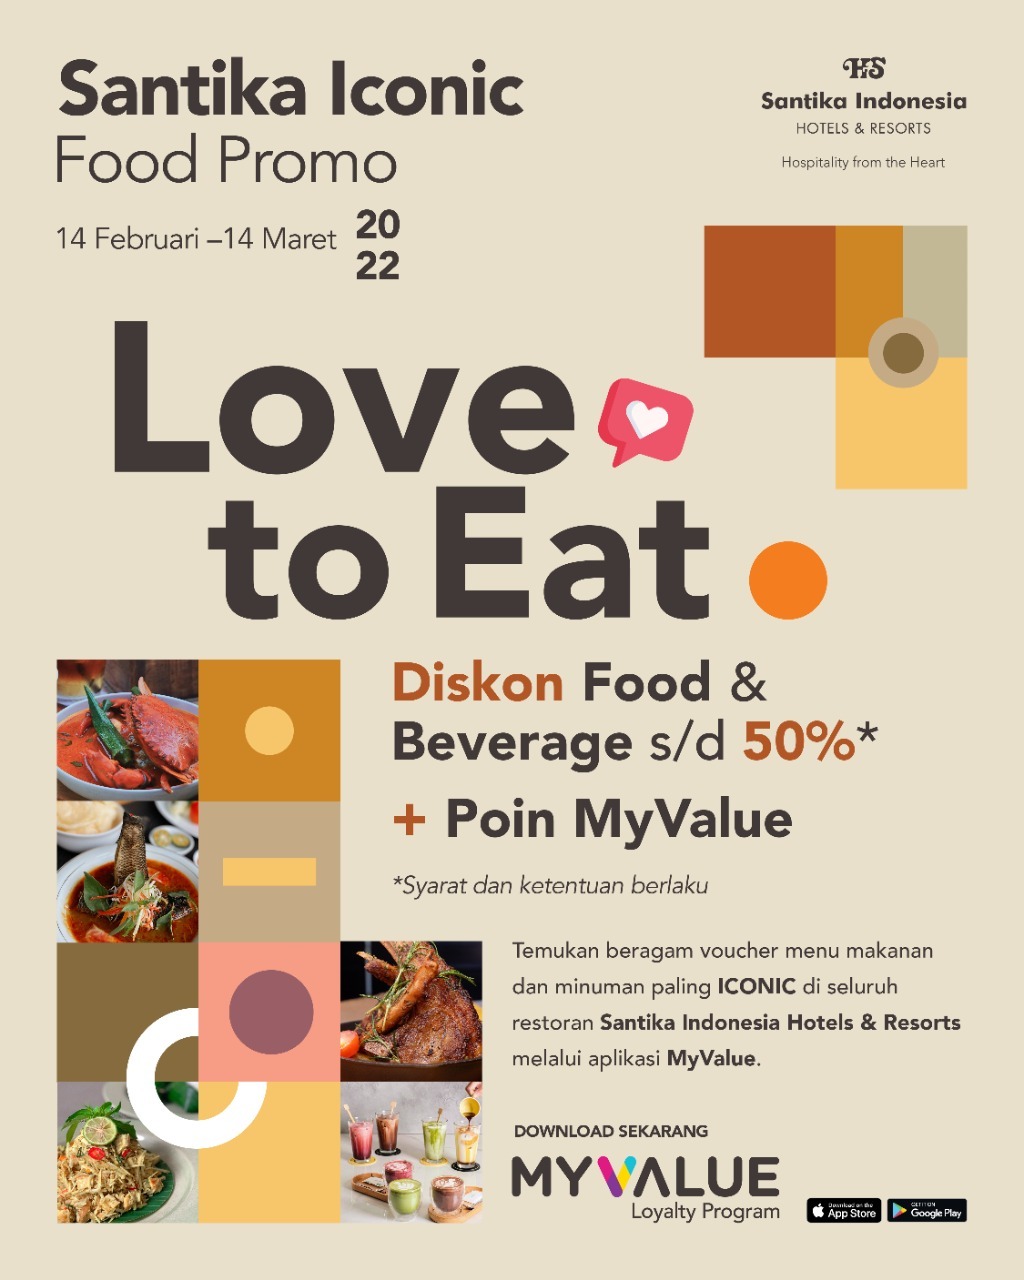 Nikmati Kuliner Khas Nusantara di Santika Iconic Food Promo “Love to Eat”